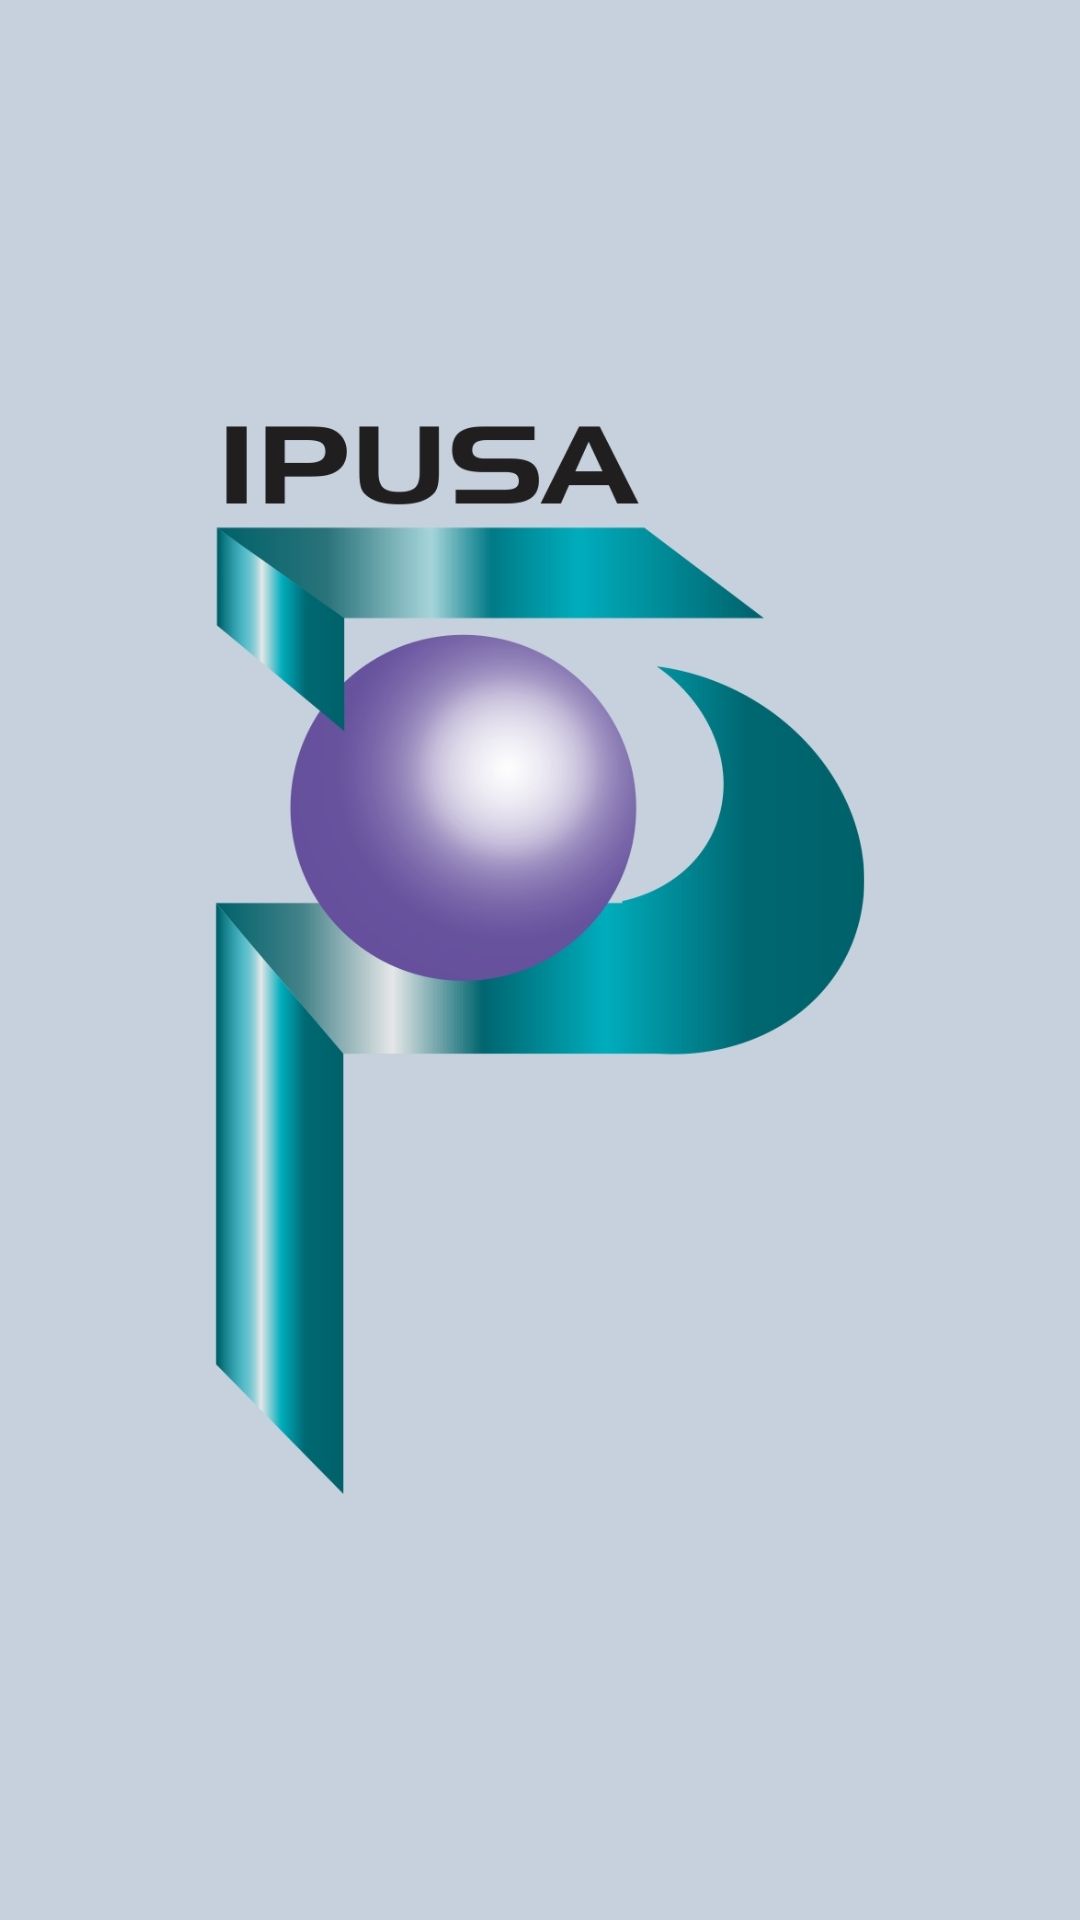 Ipusa - The Best Master Batch